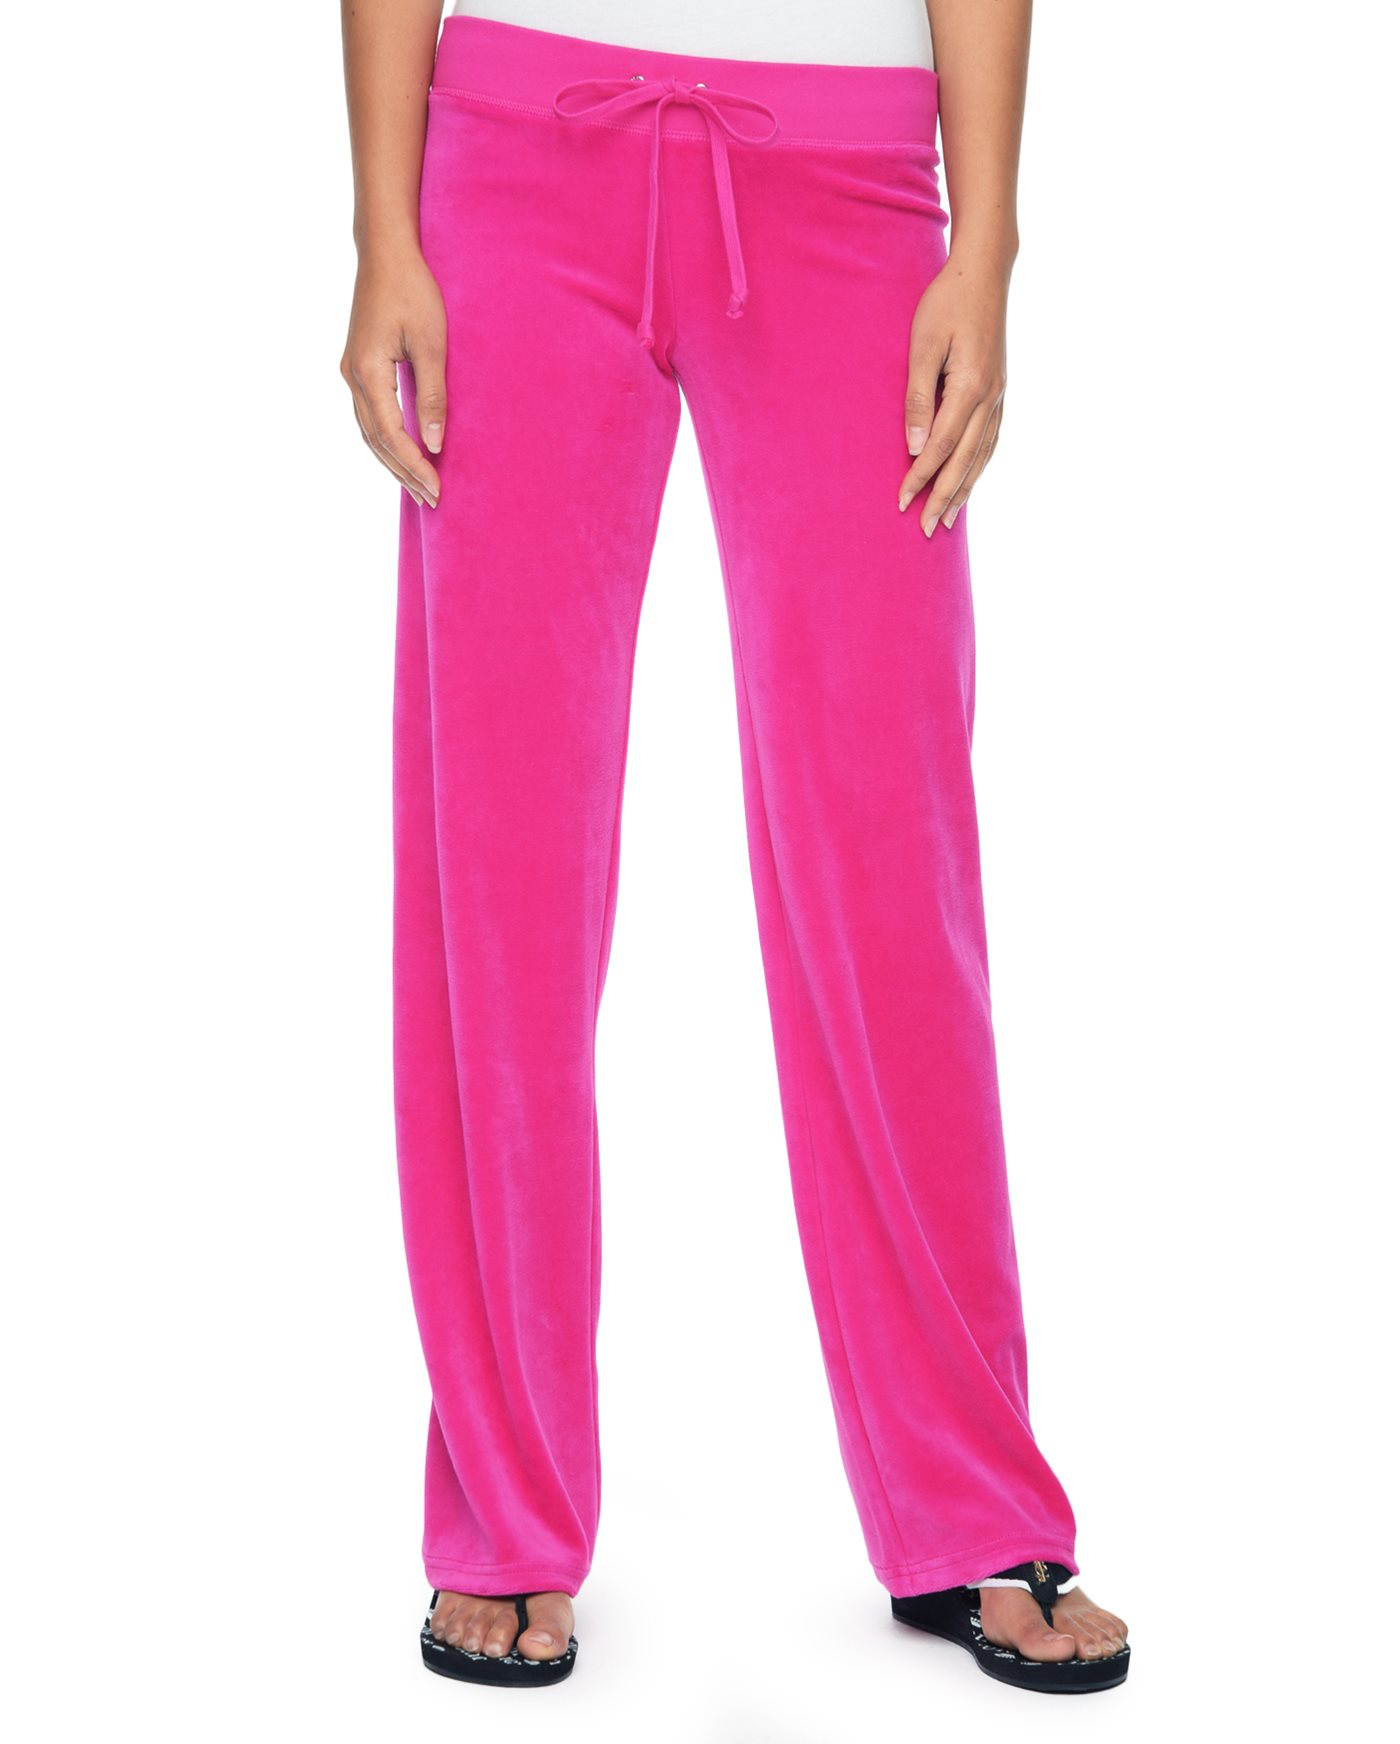 Juicy couture Logo Choose Juicy Velour Original Pant in Pink (Sweet ...